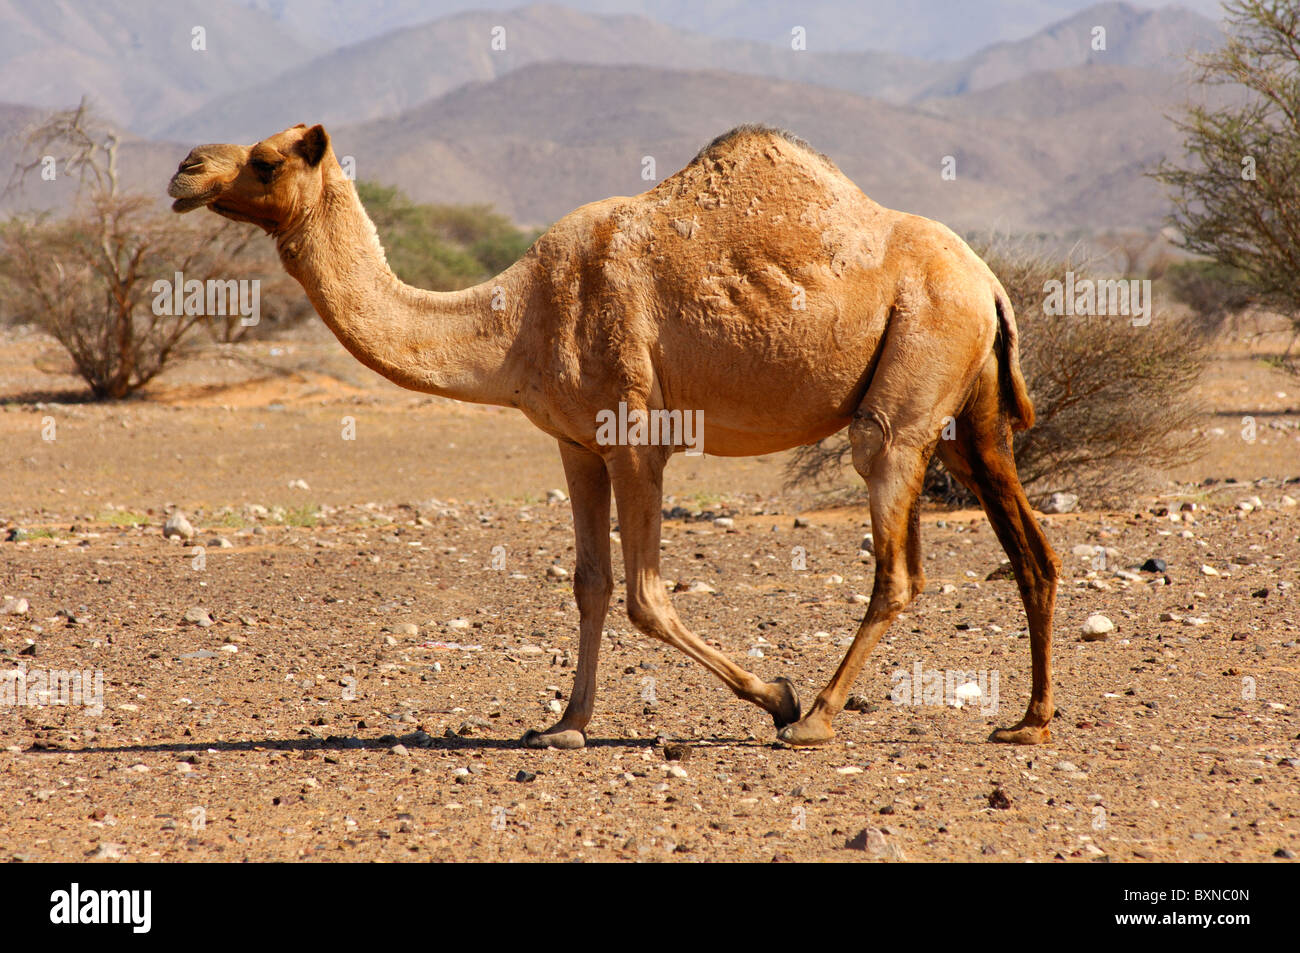 Semi-sauvages Dromadaire (Camelus dromedarius) ou chameau d'Arabie, dans l'habitat naturel d'une zone semi-désertique, Sultanat d'Oman Banque D'Images